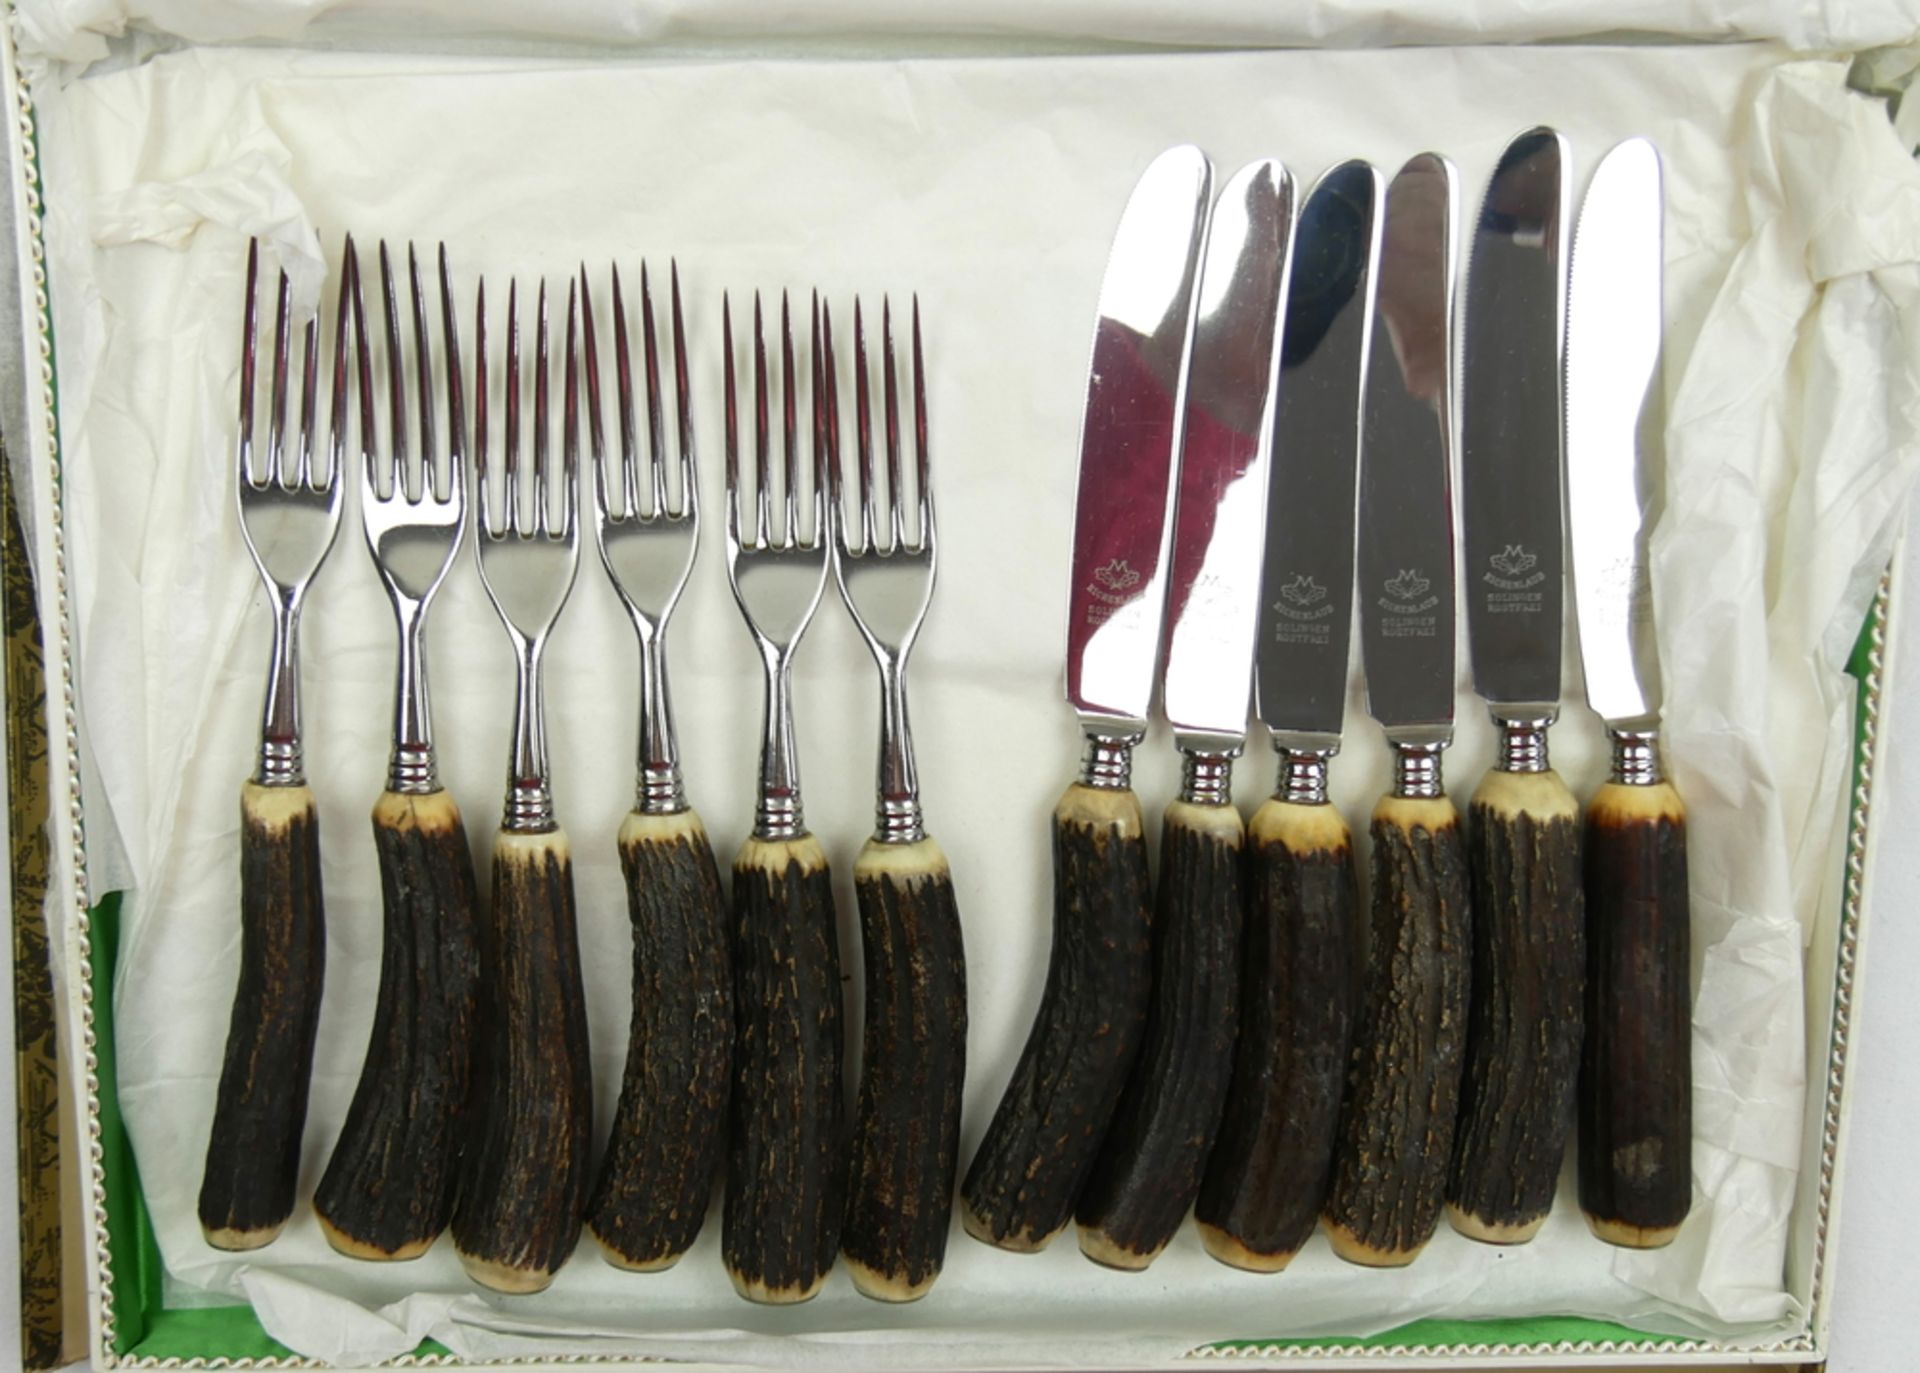 Jagdbesteck 6 - teilig "Eichenlaub Solingen", bestehend aus 6 Gabeln sowie 6 Messer, im Kasten.